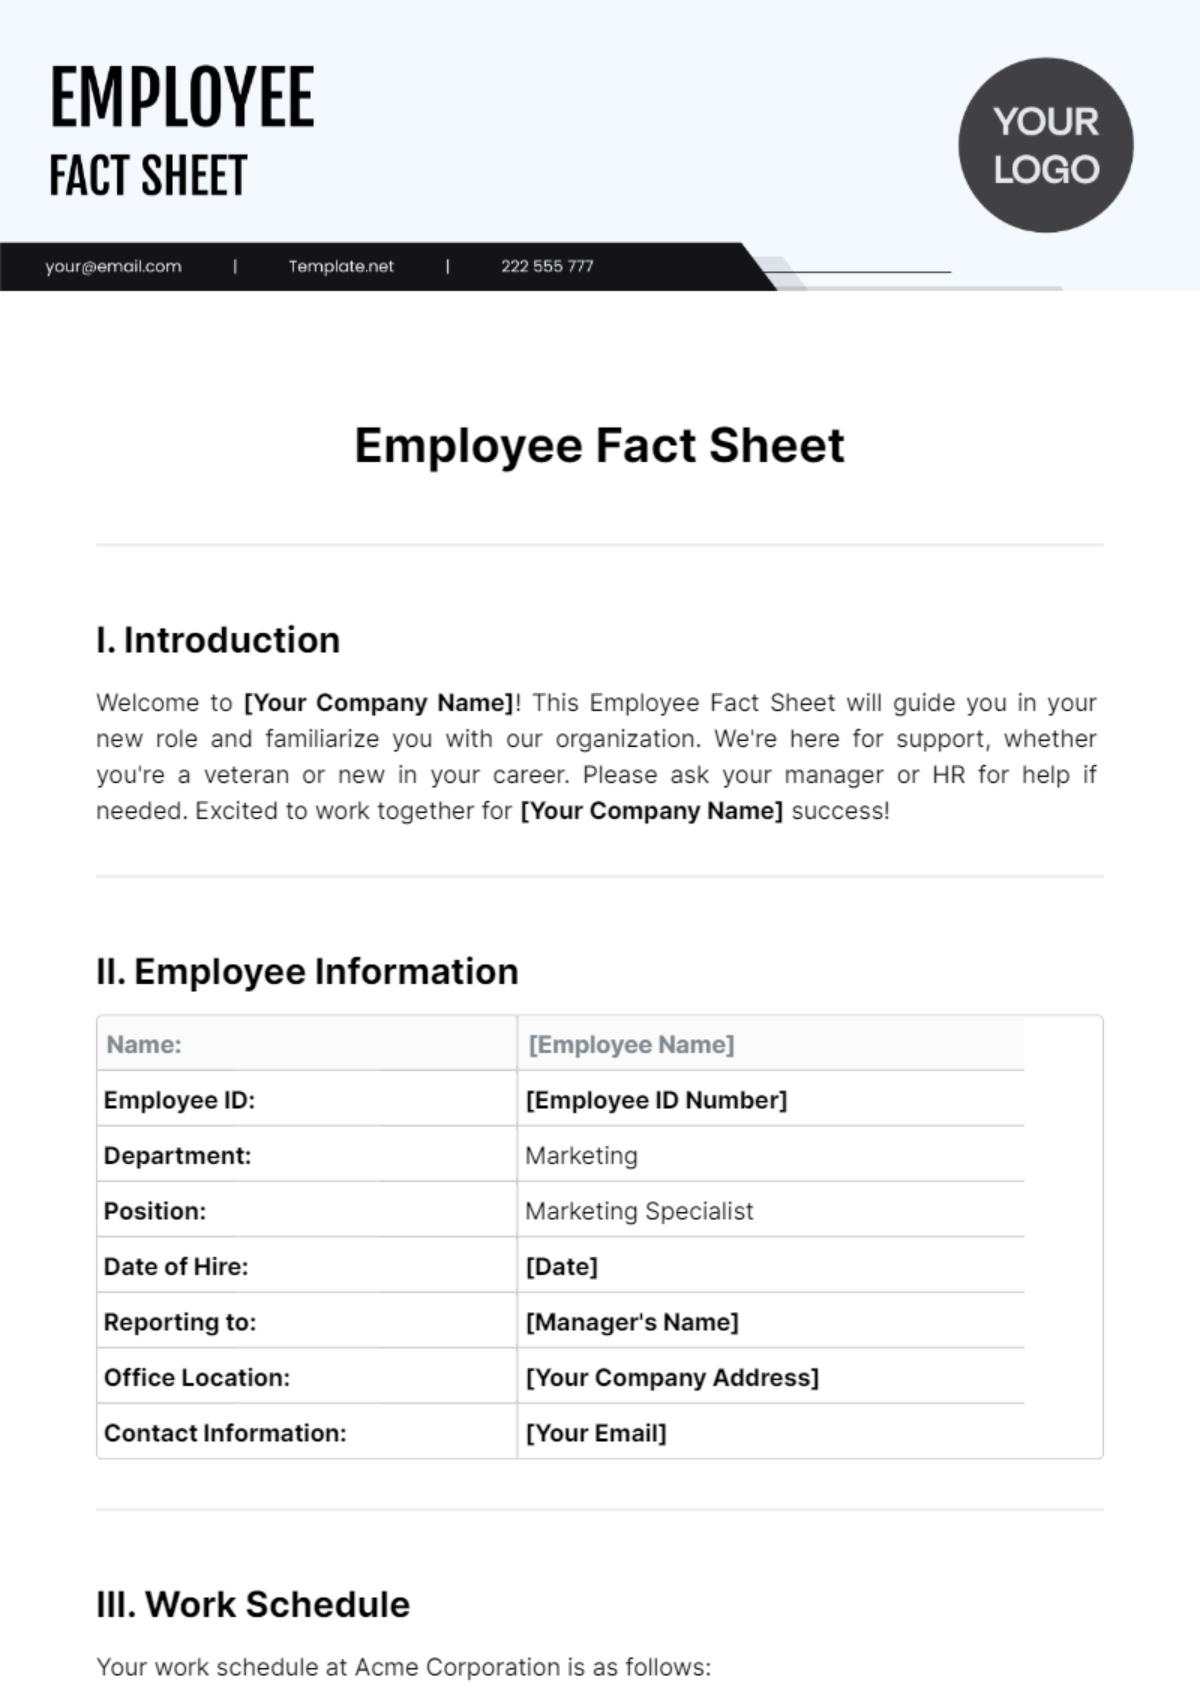 Employee Fact Sheet Template